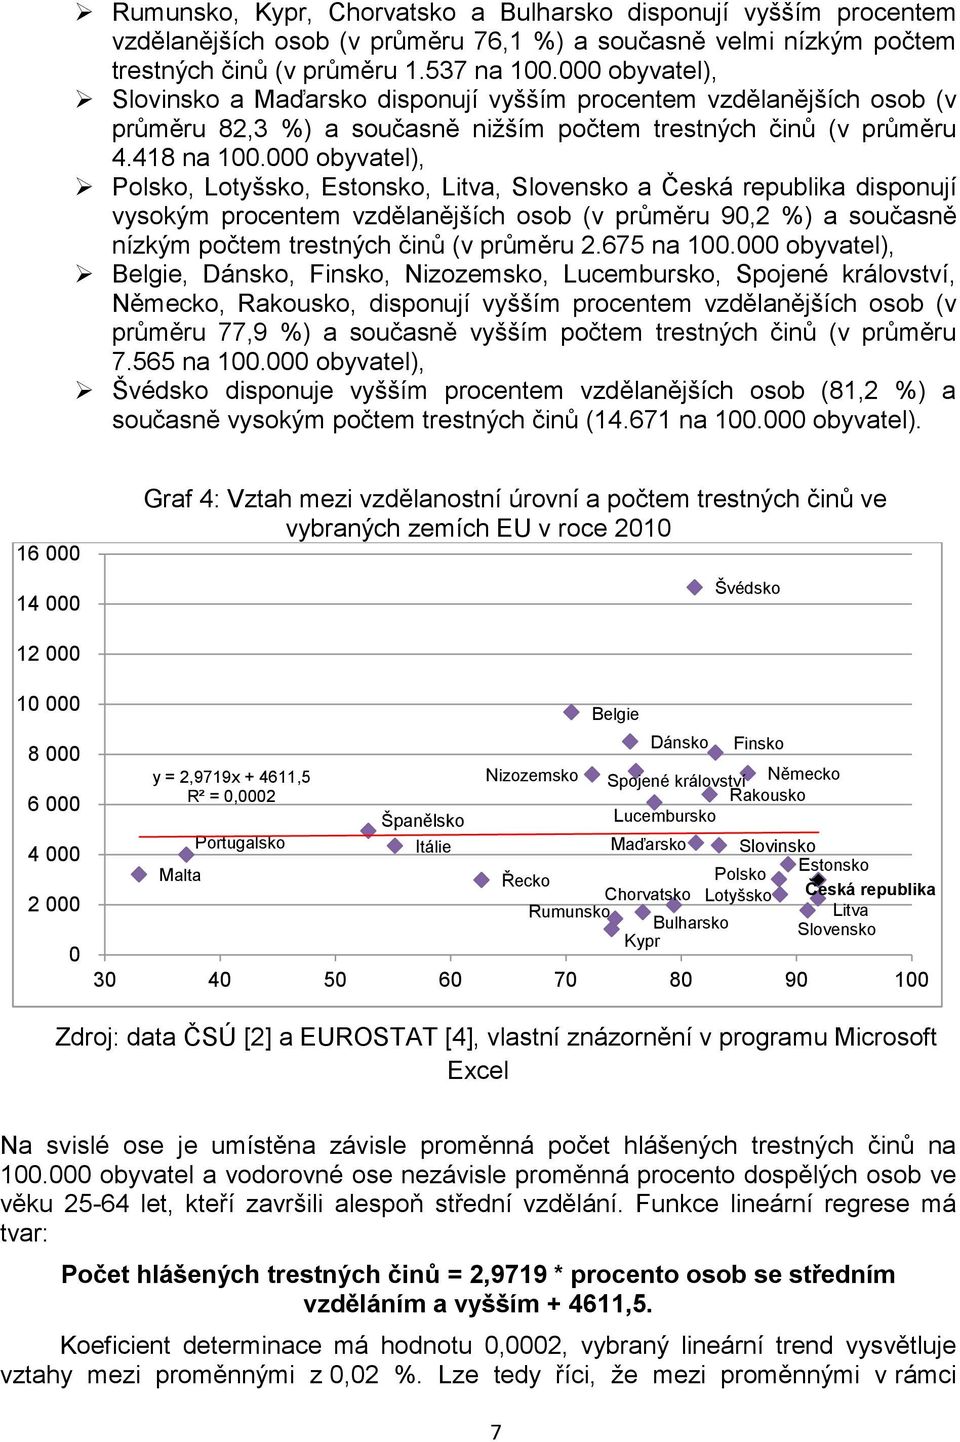 000 obyvatel), Polsko, Lotyšsko, Estonsko, Litva, Slovensko a Česká republika disponují vysokým procentem vzdělanějších osob (v průměru 90,2 %) a současně nízkým počtem trestných činů (v průměru 2.